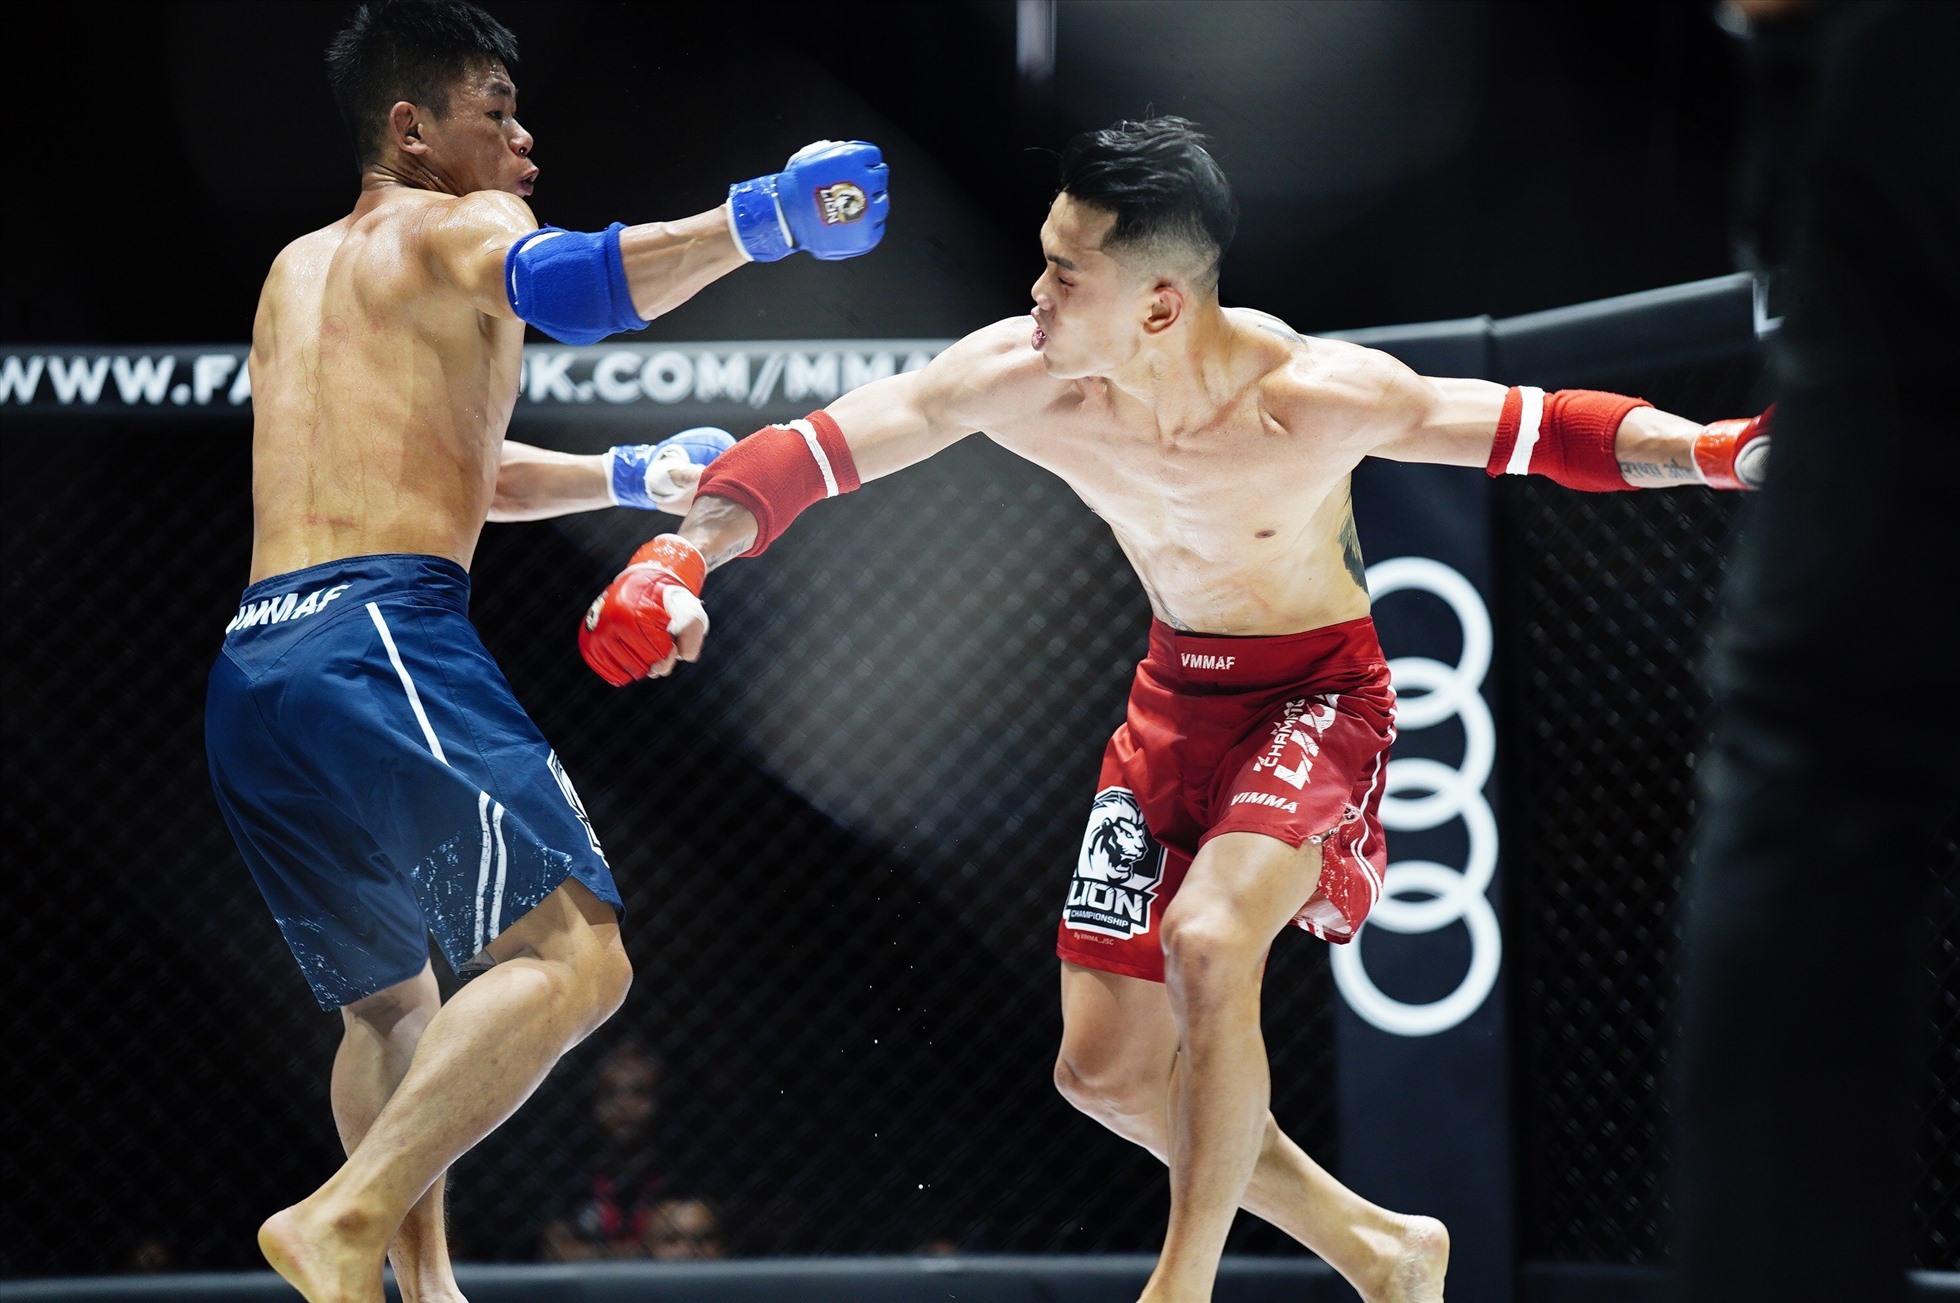 Hạng 60kg nam, Phạm Văn Lượng (xanh) thắng Nguyễn Đắc Dương (đỏ) bằng knock-out kĩ thuật. Võ sĩ Đắc Dương đã xin dừng thi đấu sau khi hiệp 2 kết thúc.